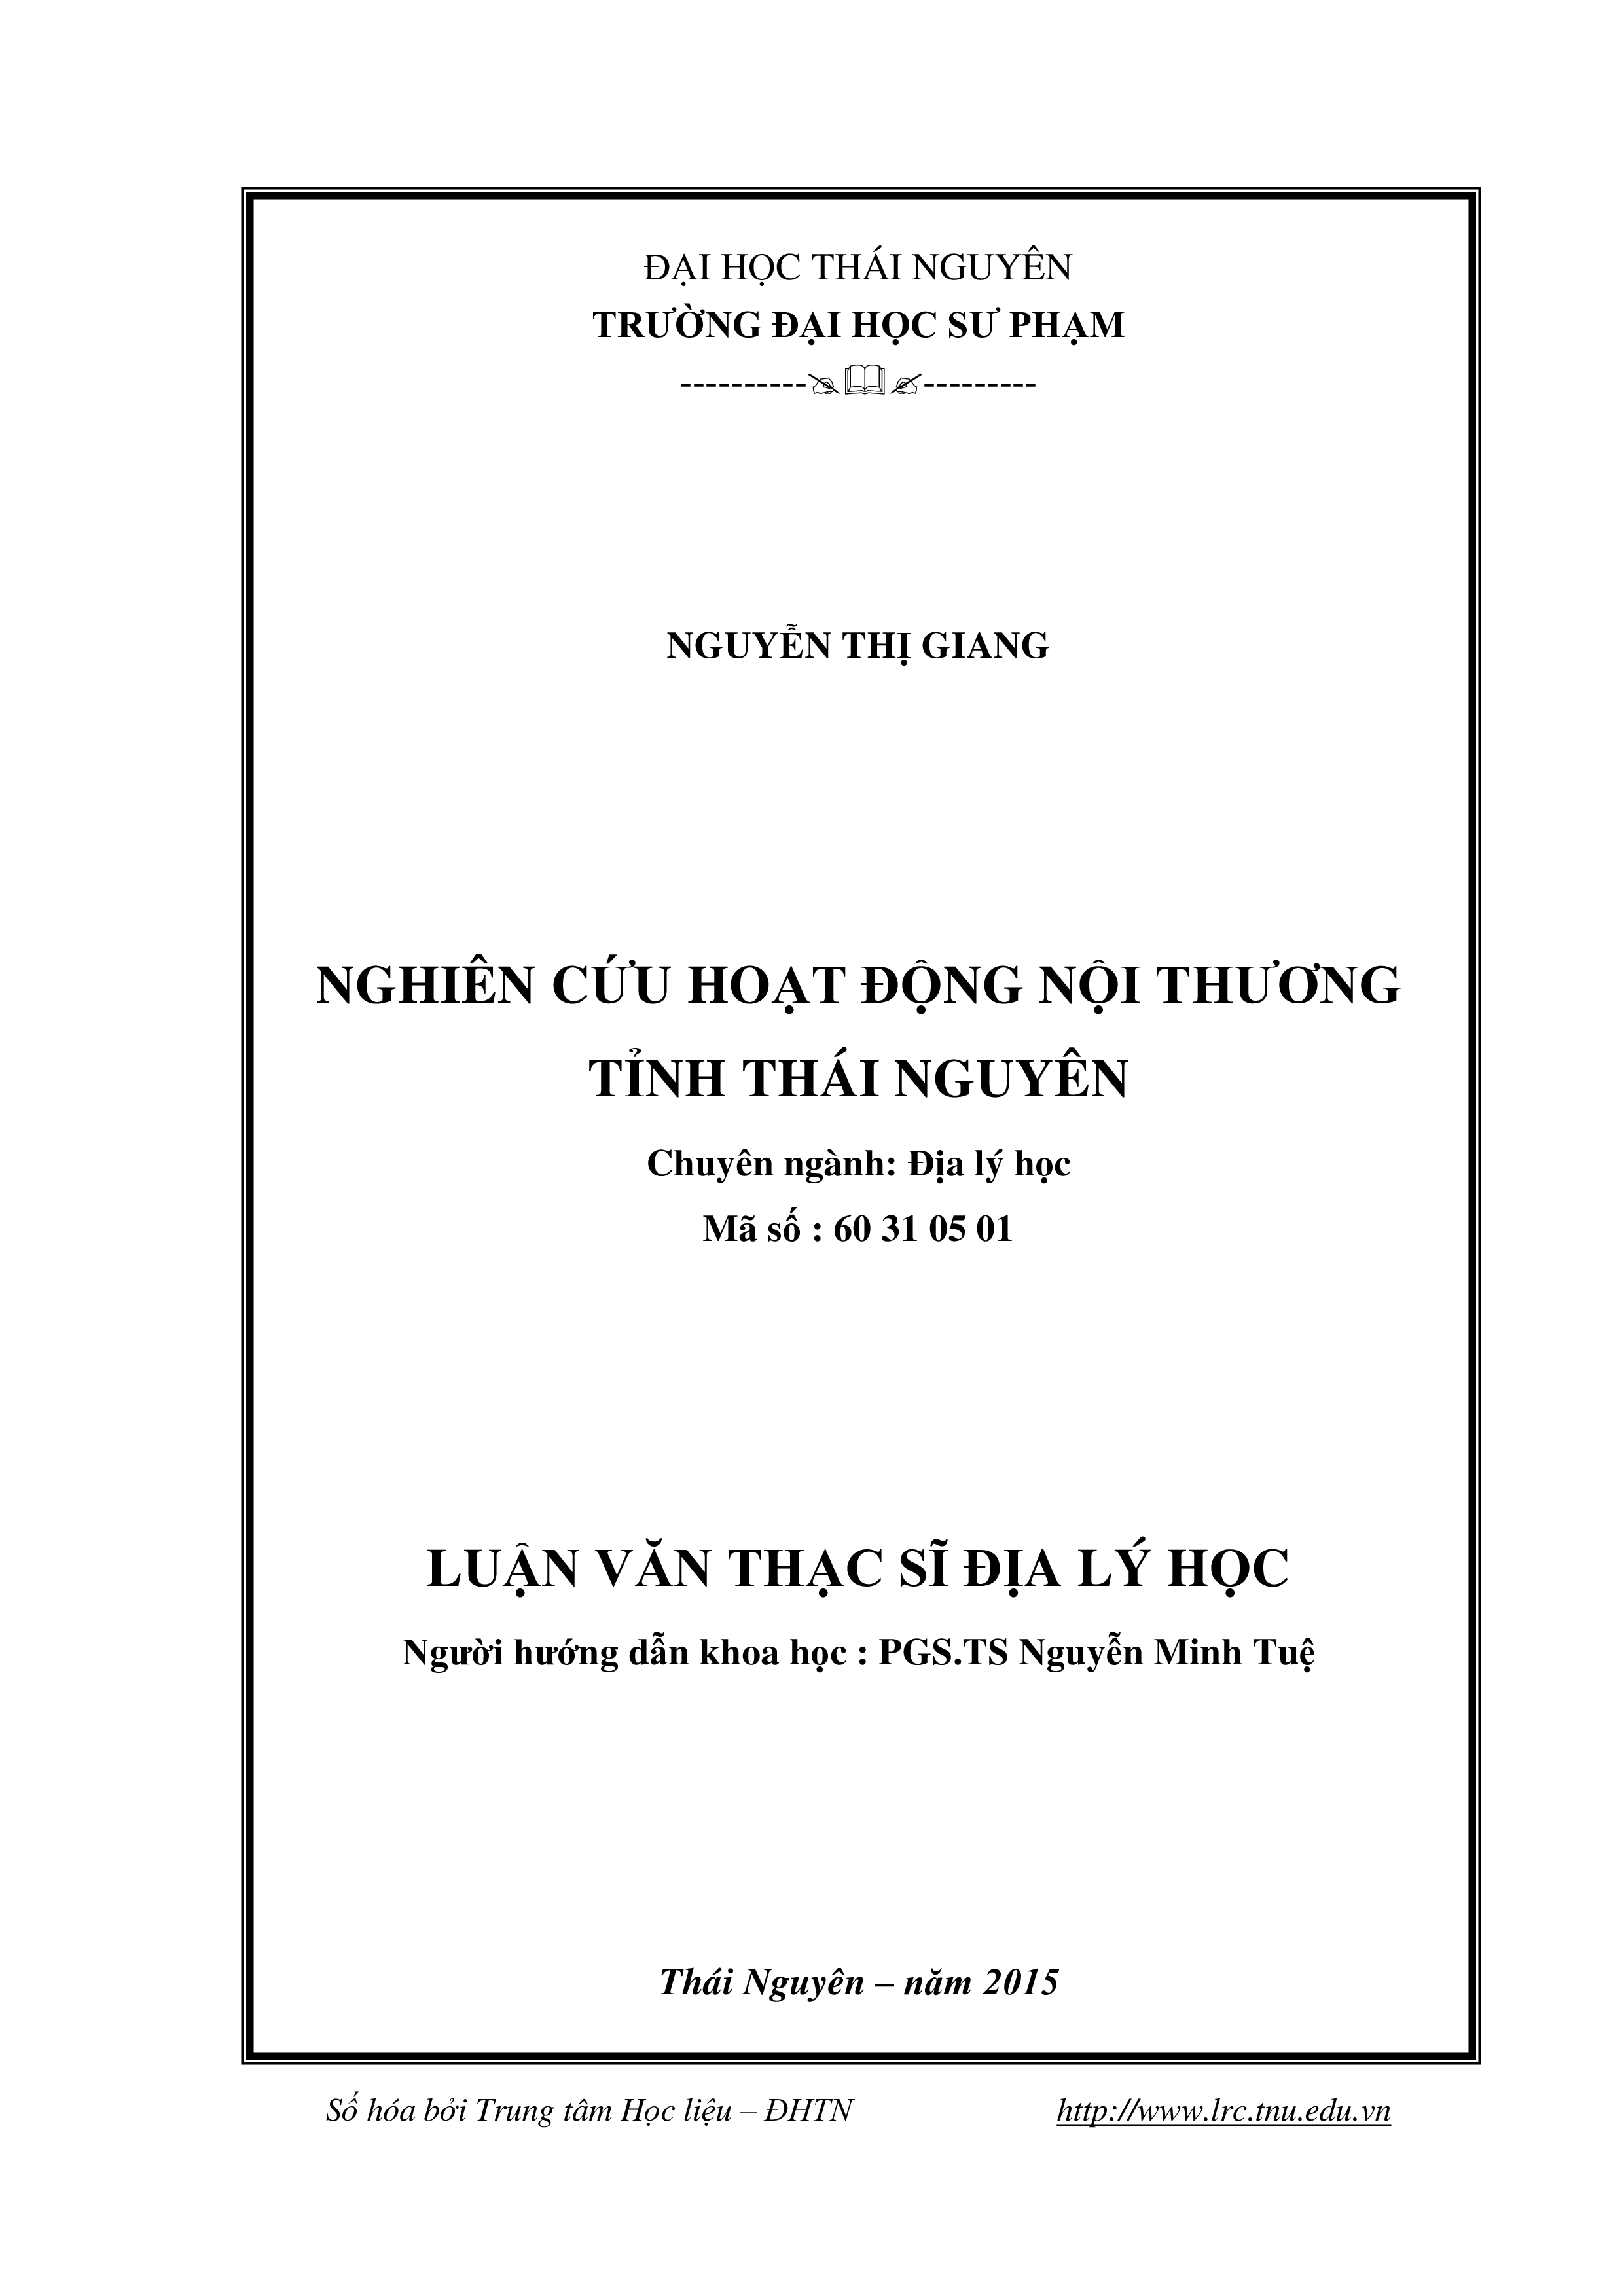 Nghiên cứu hoạt động nội thương tỉnh Thái Nguyên